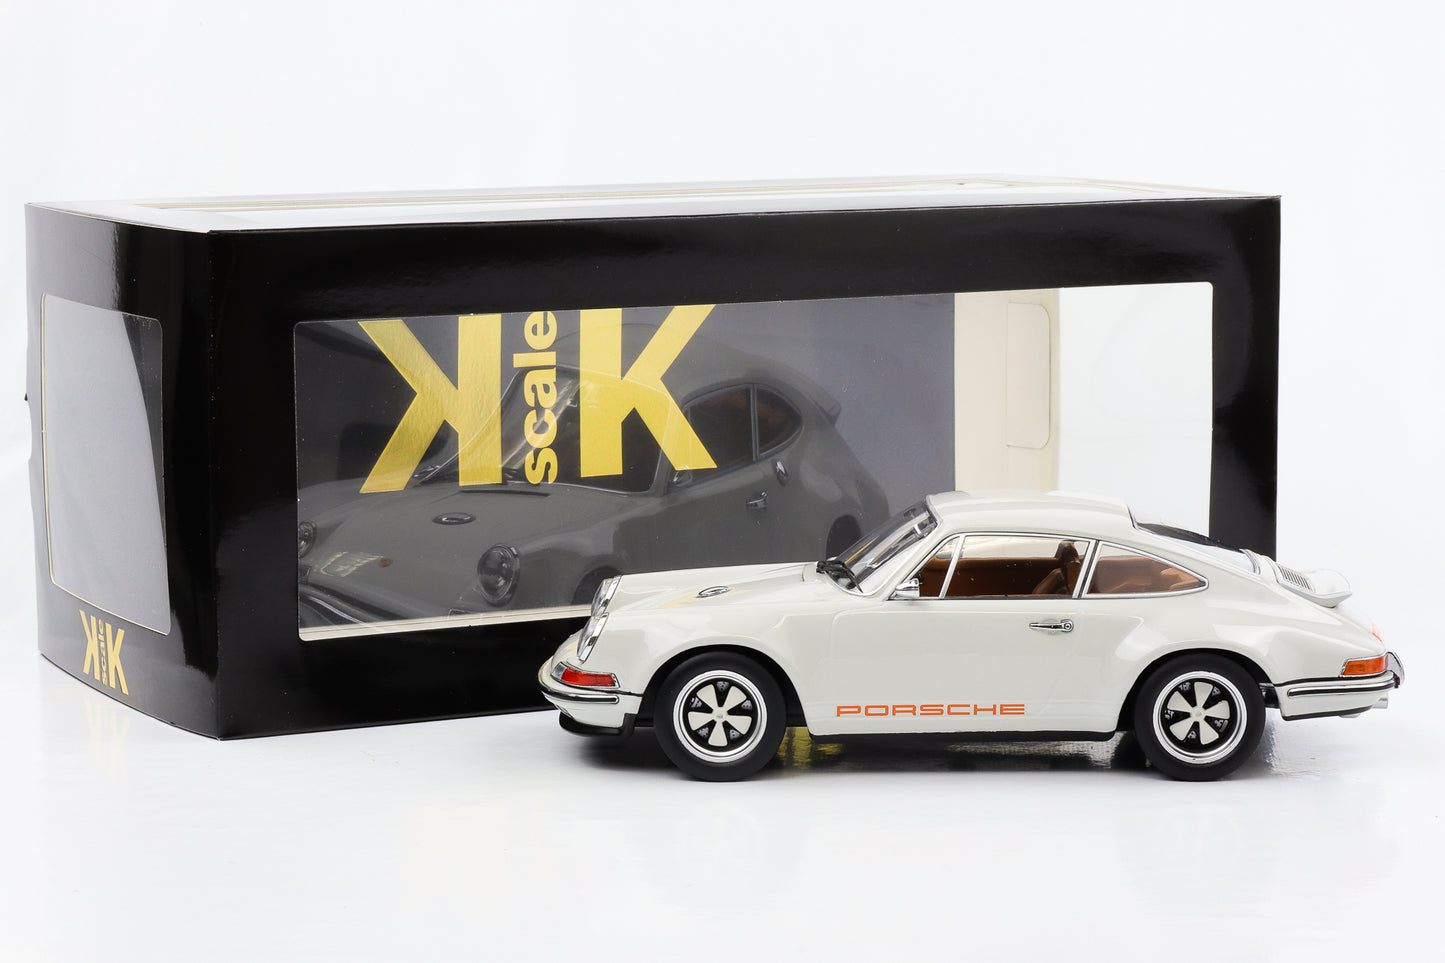 Porsche Singer 911 Coupé grigia in scala KK pressofusa in scala 1:18